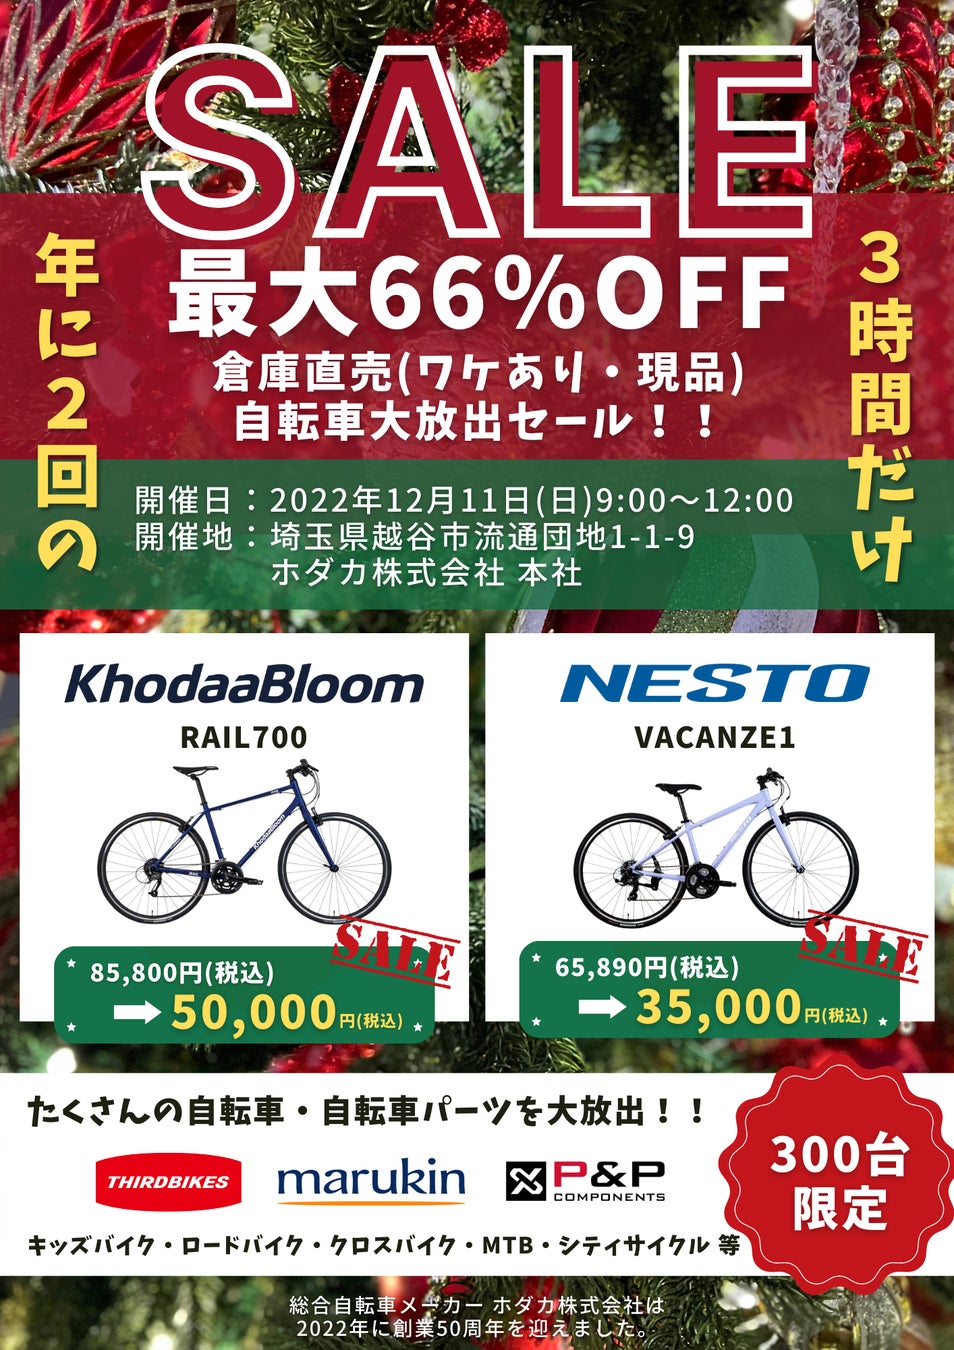 総合自転車メーカー ホダカ、倉庫直売 自転車アウトレットセールを開催